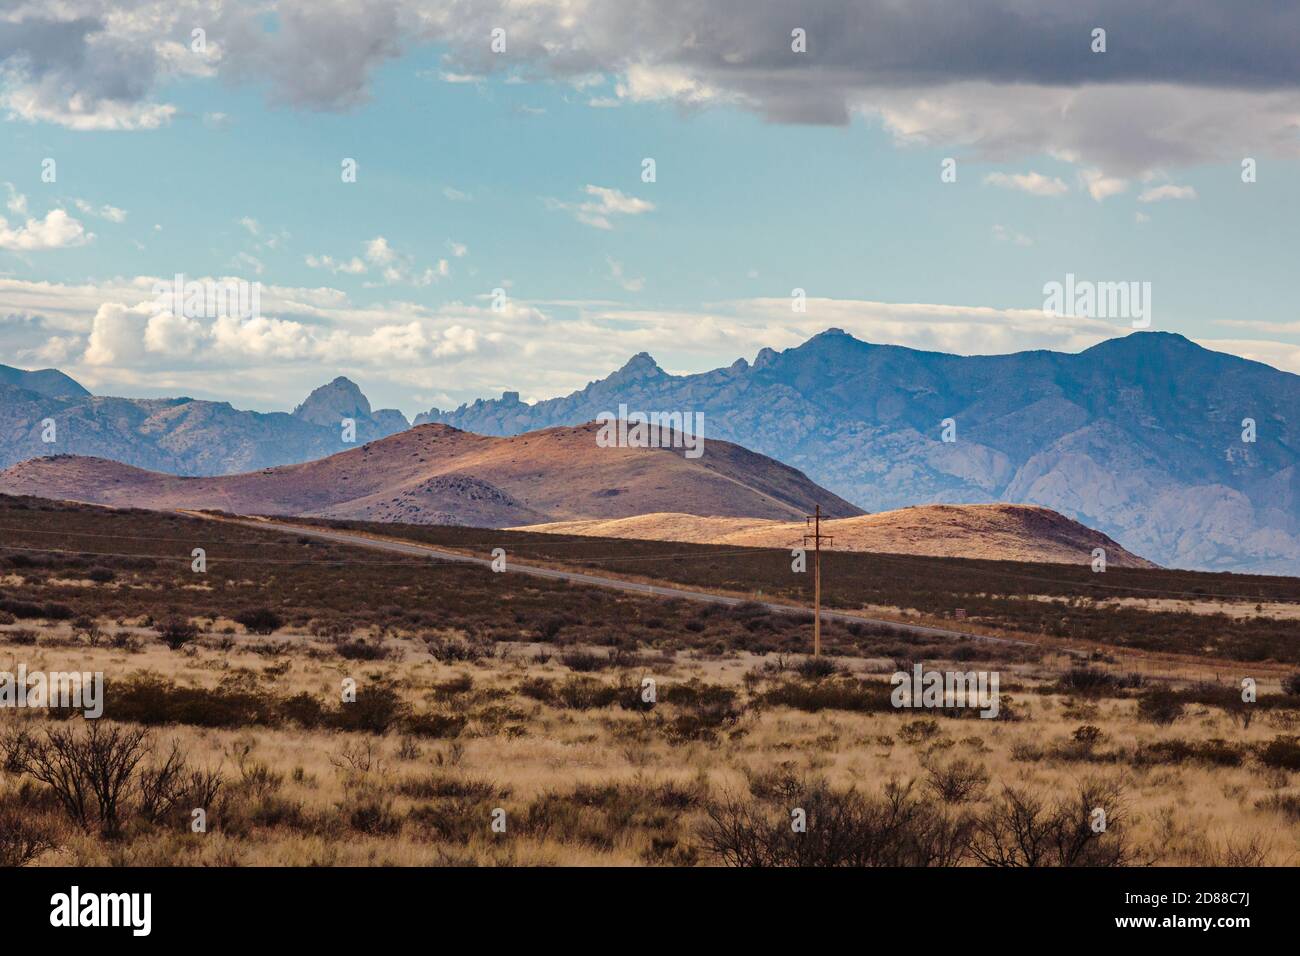 Les contreforts sont illuminés par la lumière des montagnes Dragoon (berceau de Cochise Stronghold) en arrière-plan. Banque D'Images